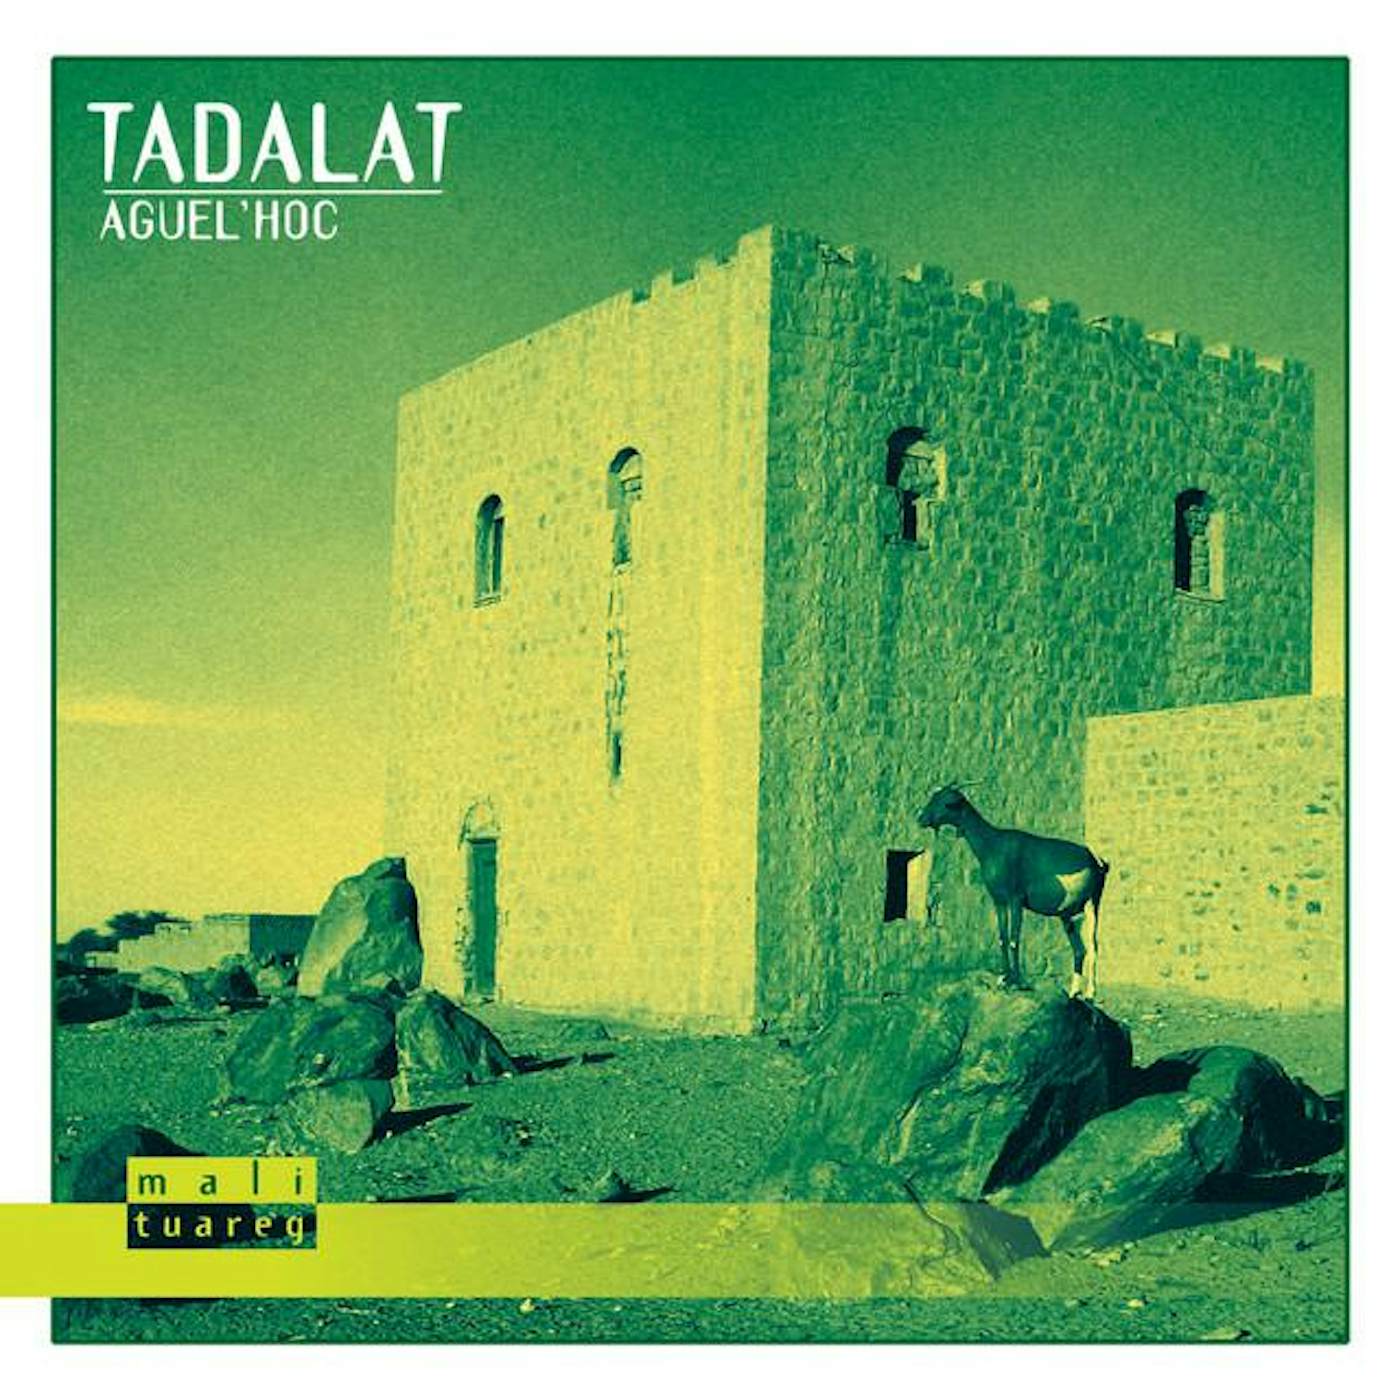 Tadalat